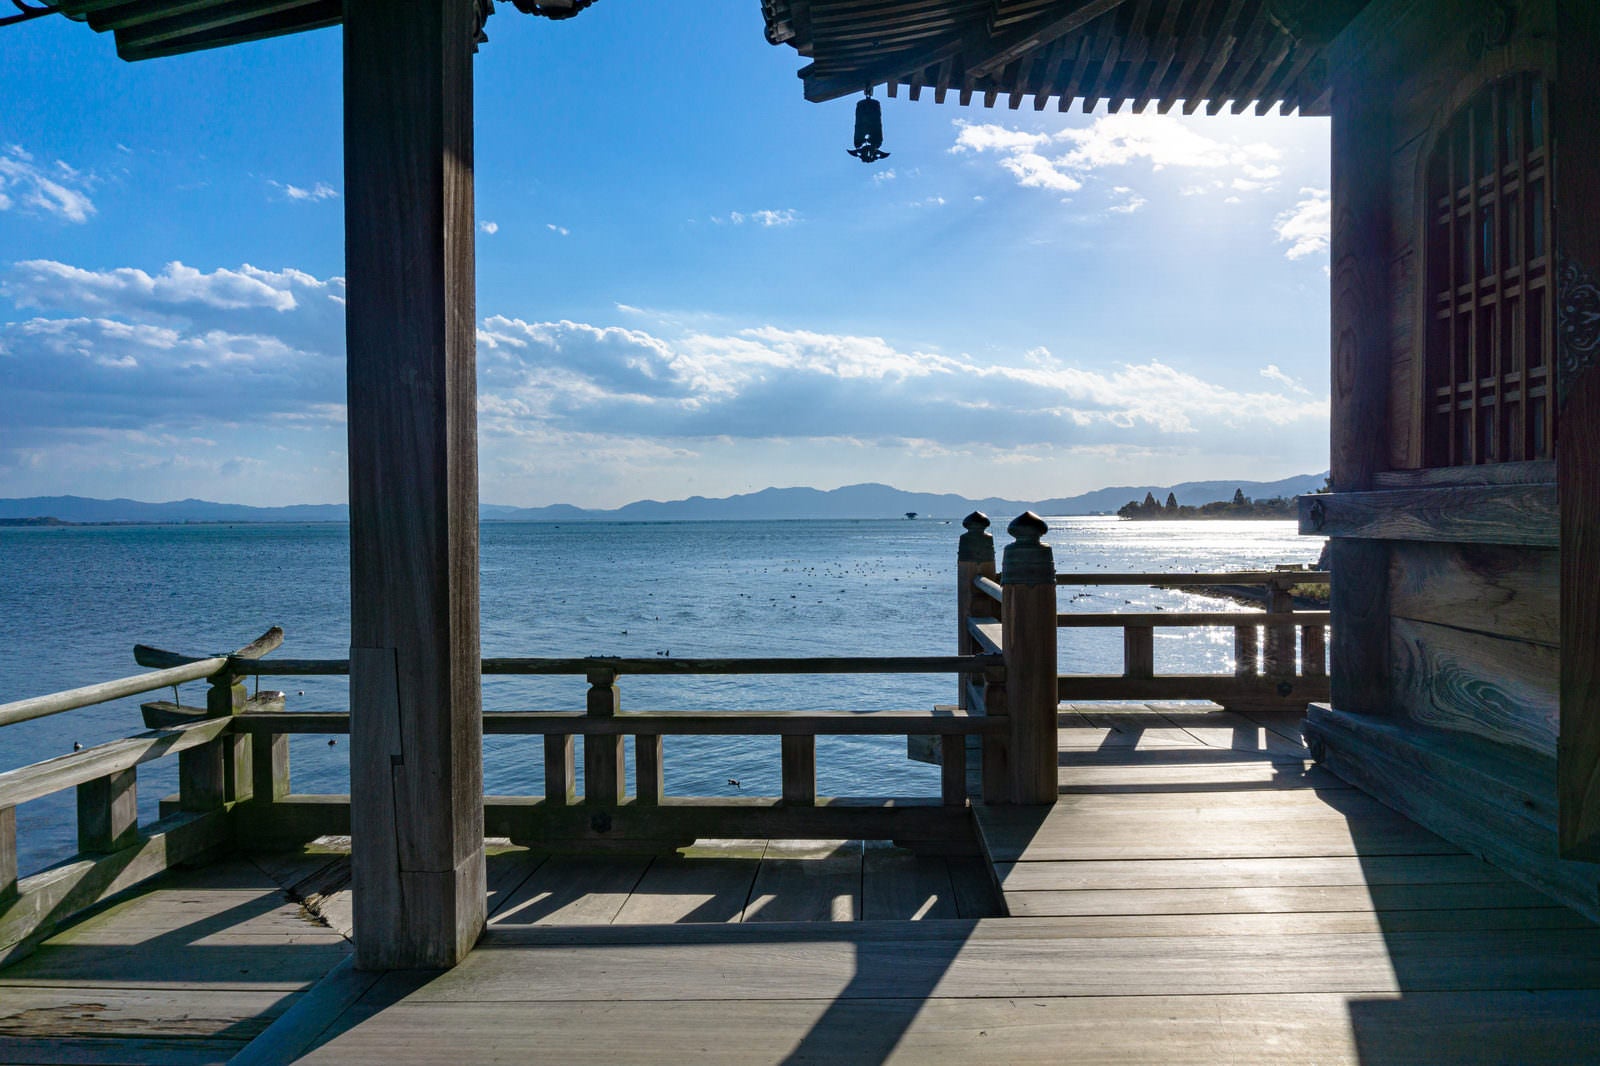 「浮御堂から見るキラキラと輝く琵琶湖」の写真